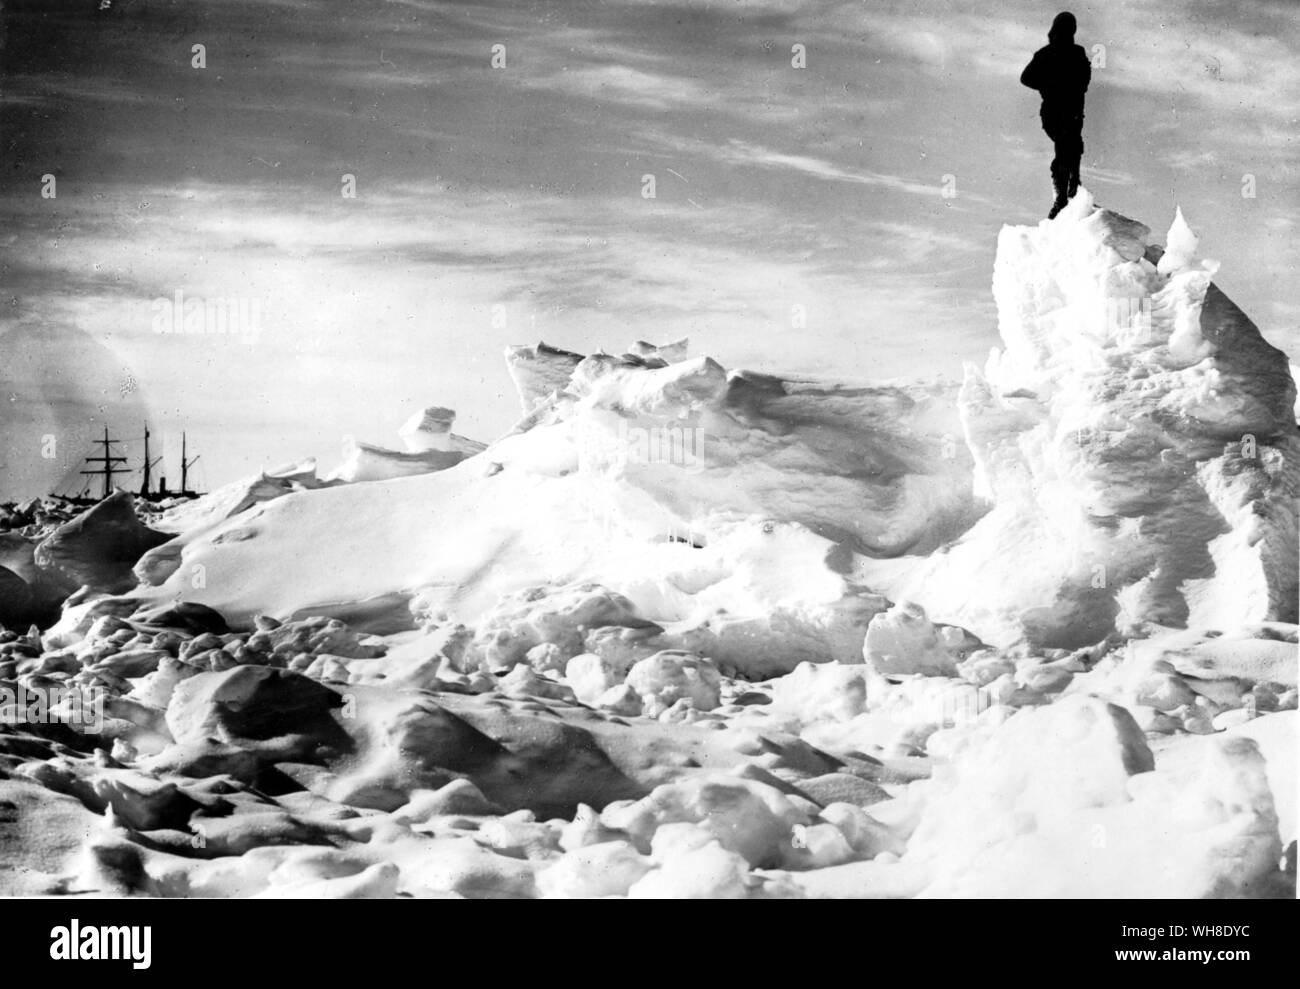 Barco Endurance en segundo plano. En 1916, Sir Ernest Shackleton, el barco Endurance quedó aplastada en los témpanos de hielo. El capitán Sir Ernest Henry Shackleton (1874-1922) fue un explorador angloirlandés, recuerda principalmente por su expedición a la Antártida de 1914-1916 en el barco Endurance. Desde la Antártida: el último continente por Ian Cameron, página 65. Foto de stock